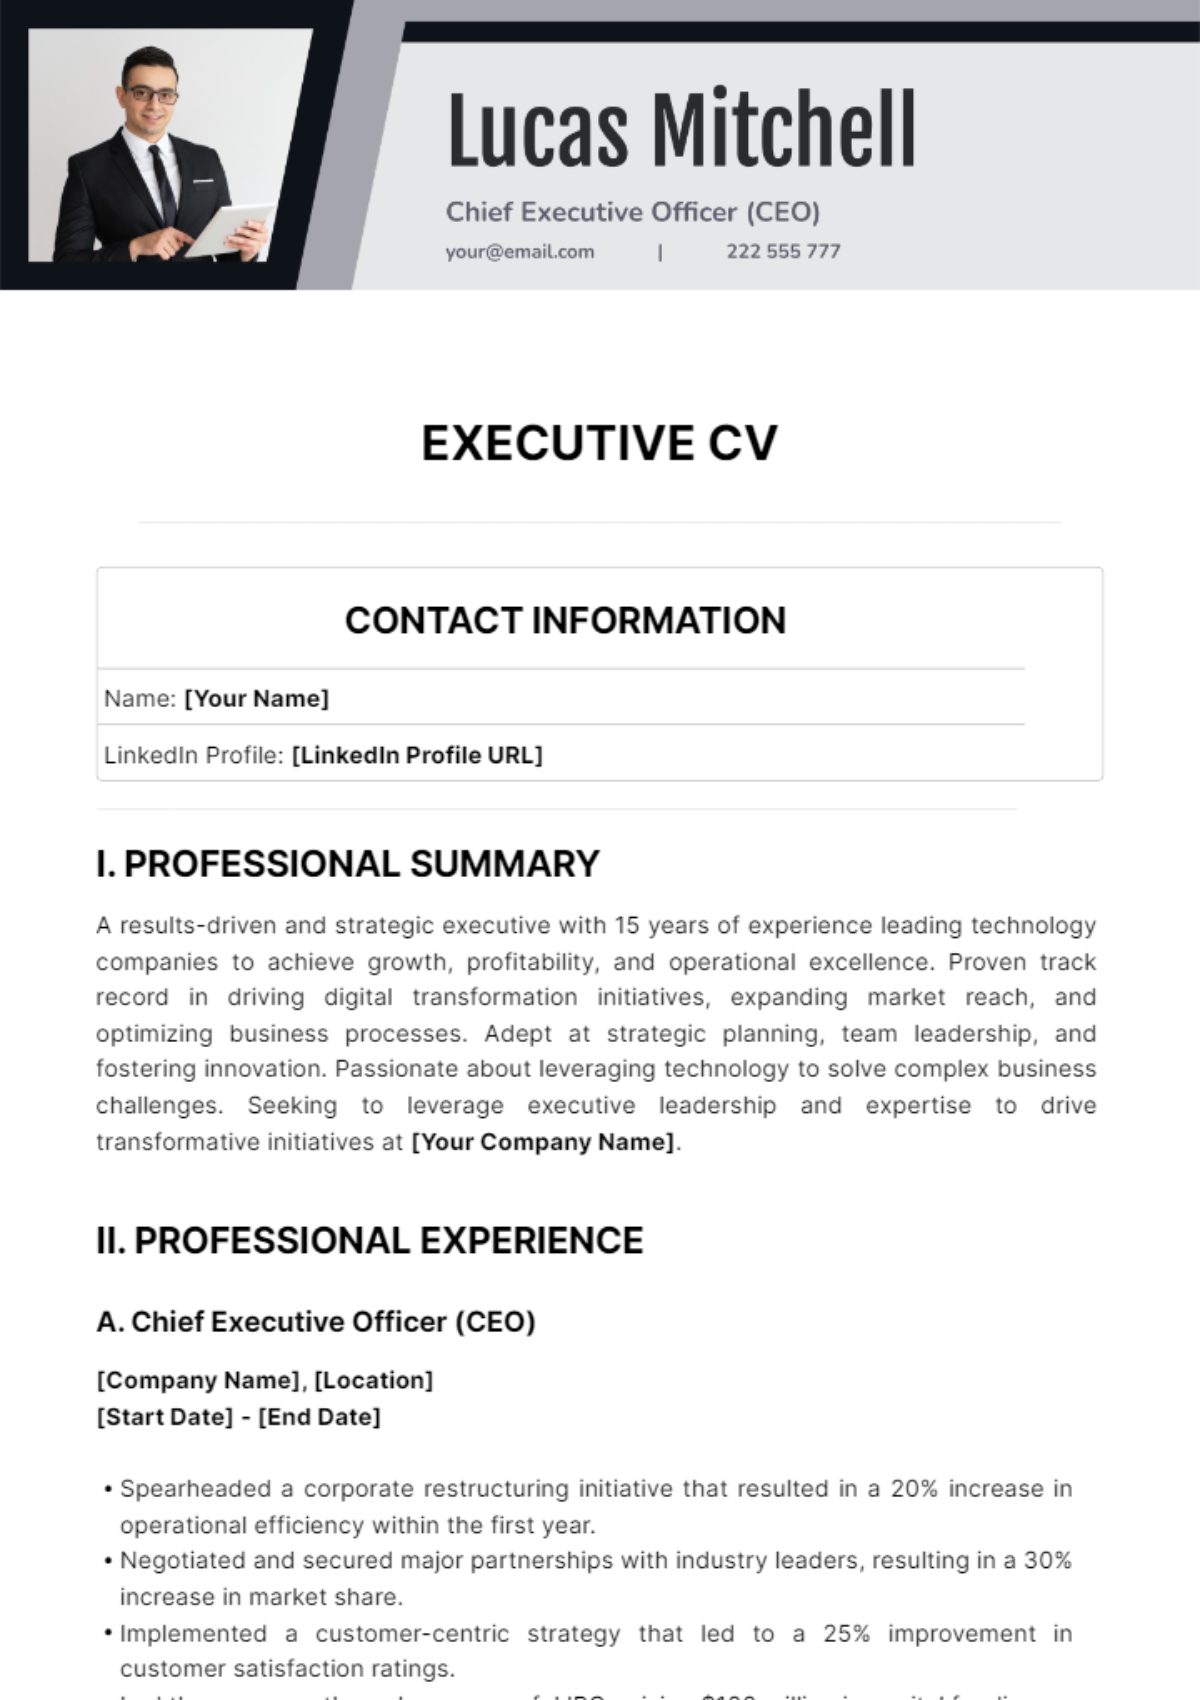 Executive CV Template